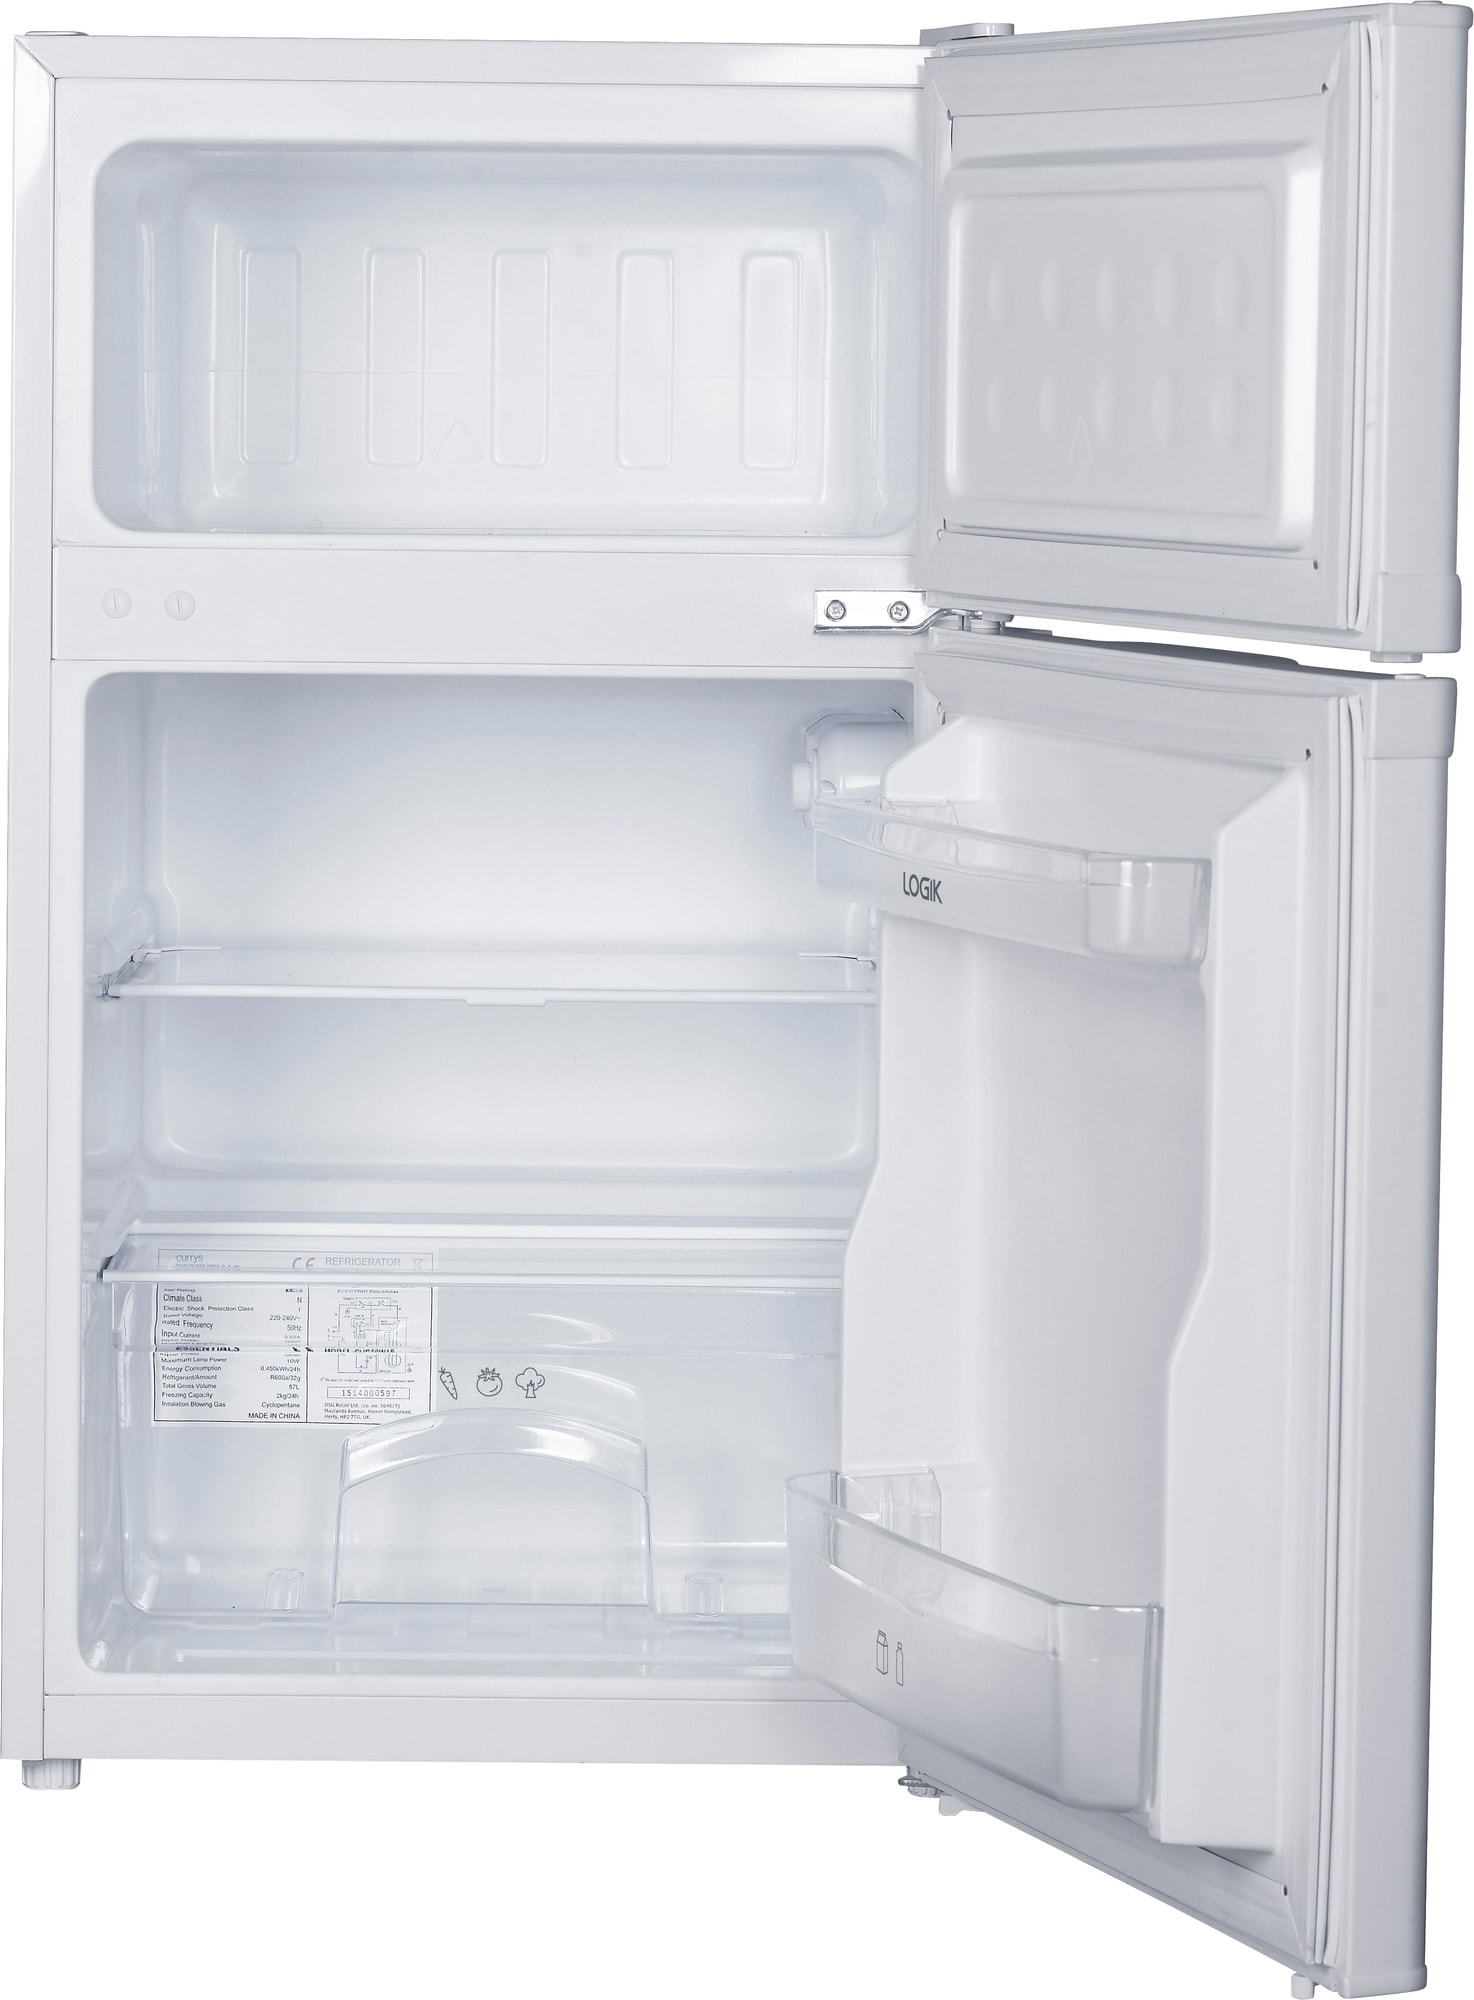 Logik kjøleskap / fryser LUC50W20E - Elkjøp